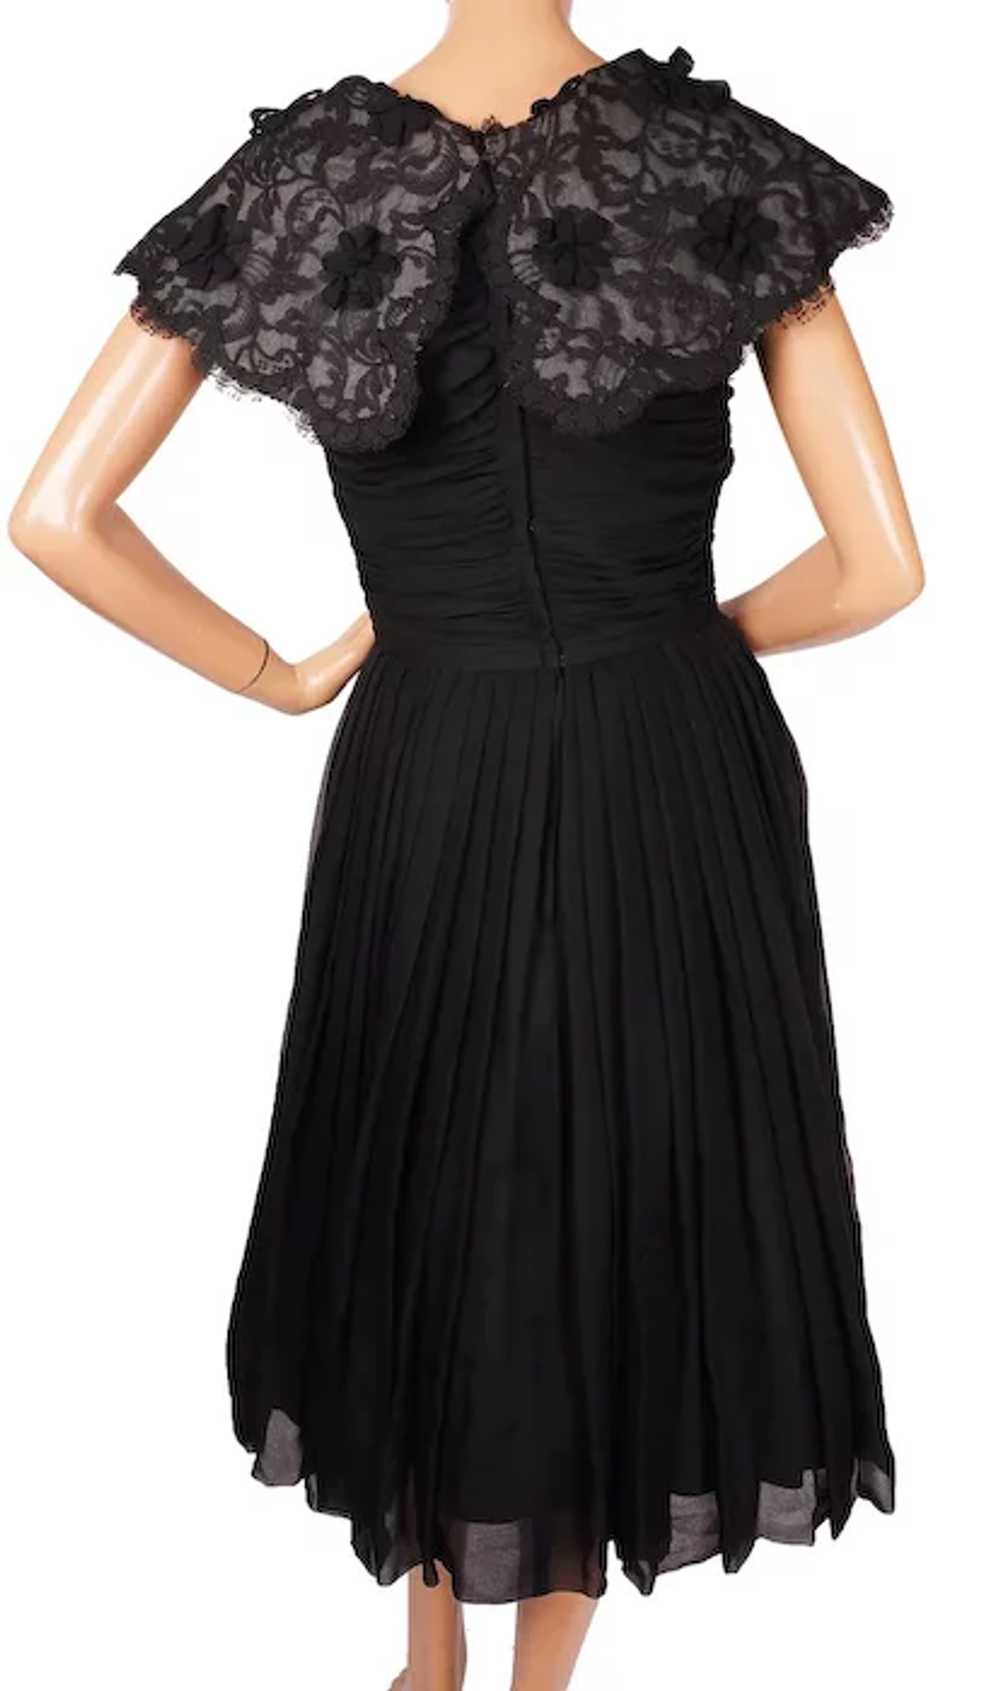 1960s Black Chiffon & Lace Dress - S - image 3